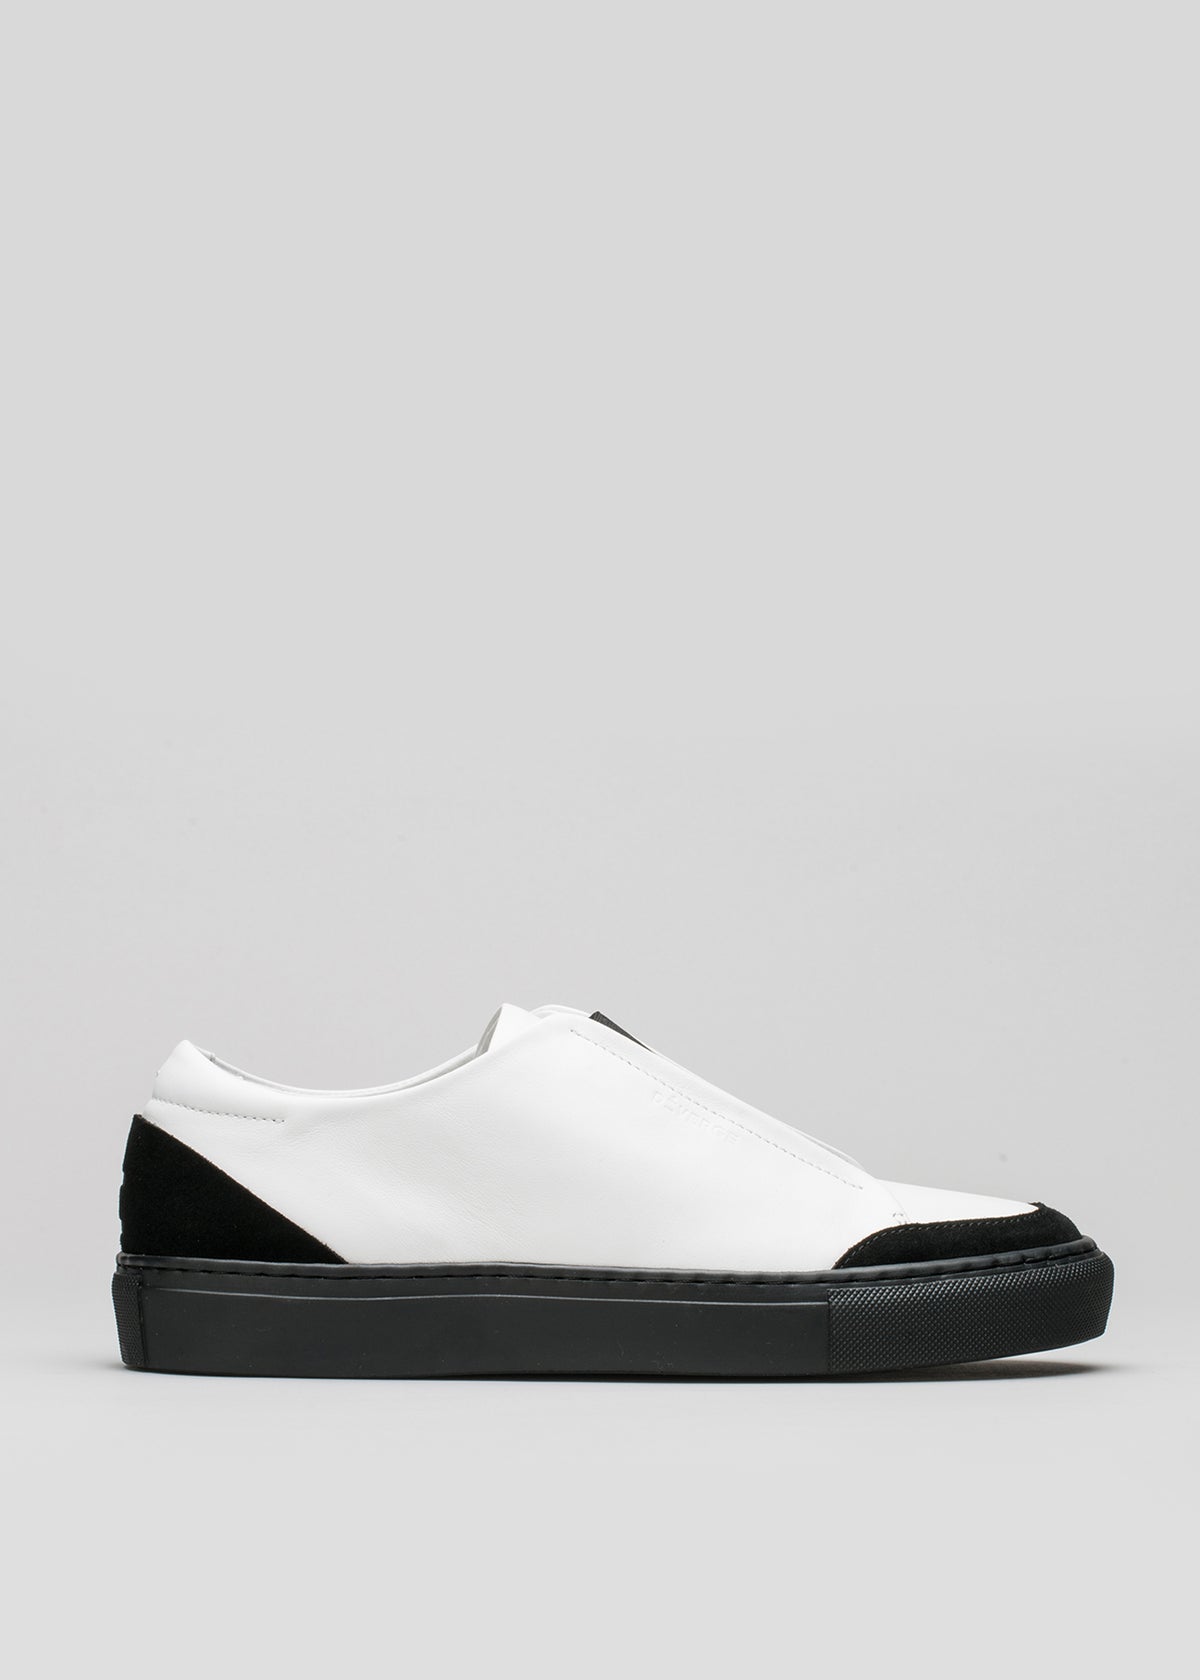 Zapatillas V6 de piel blanca y negra con suela y puntera negras sobre fondo gris claro.